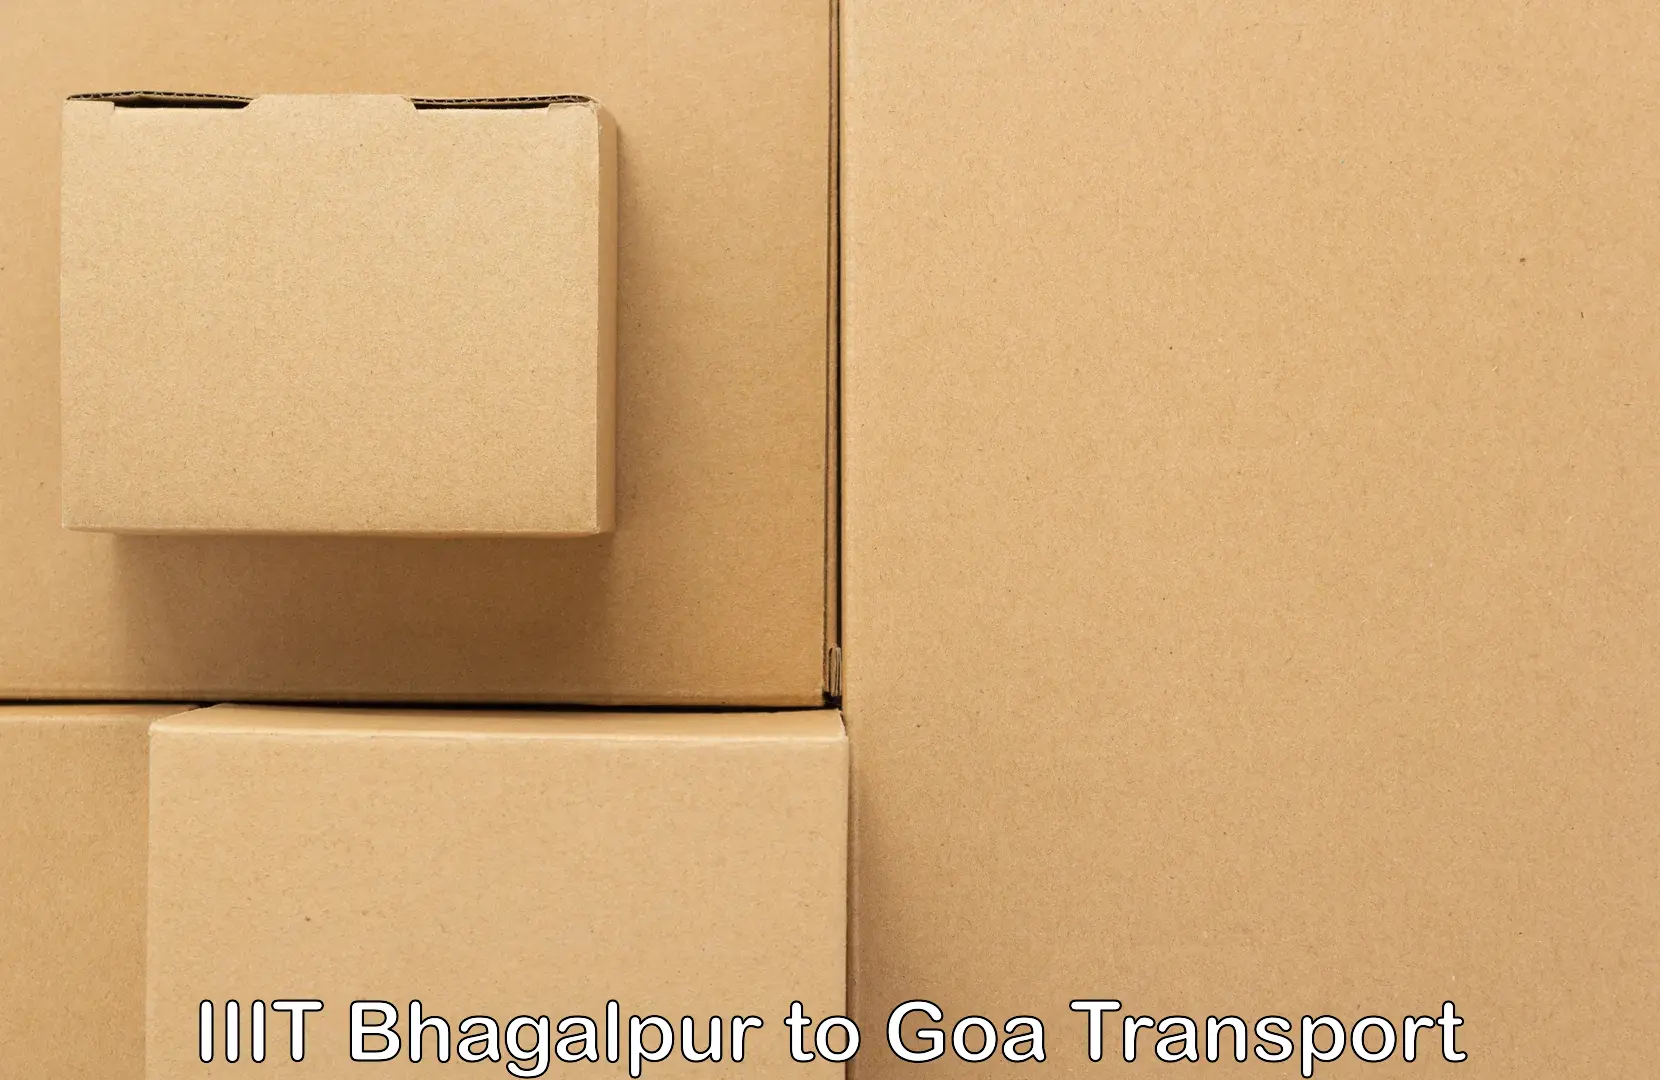 Door to door transport services IIIT Bhagalpur to South Goa